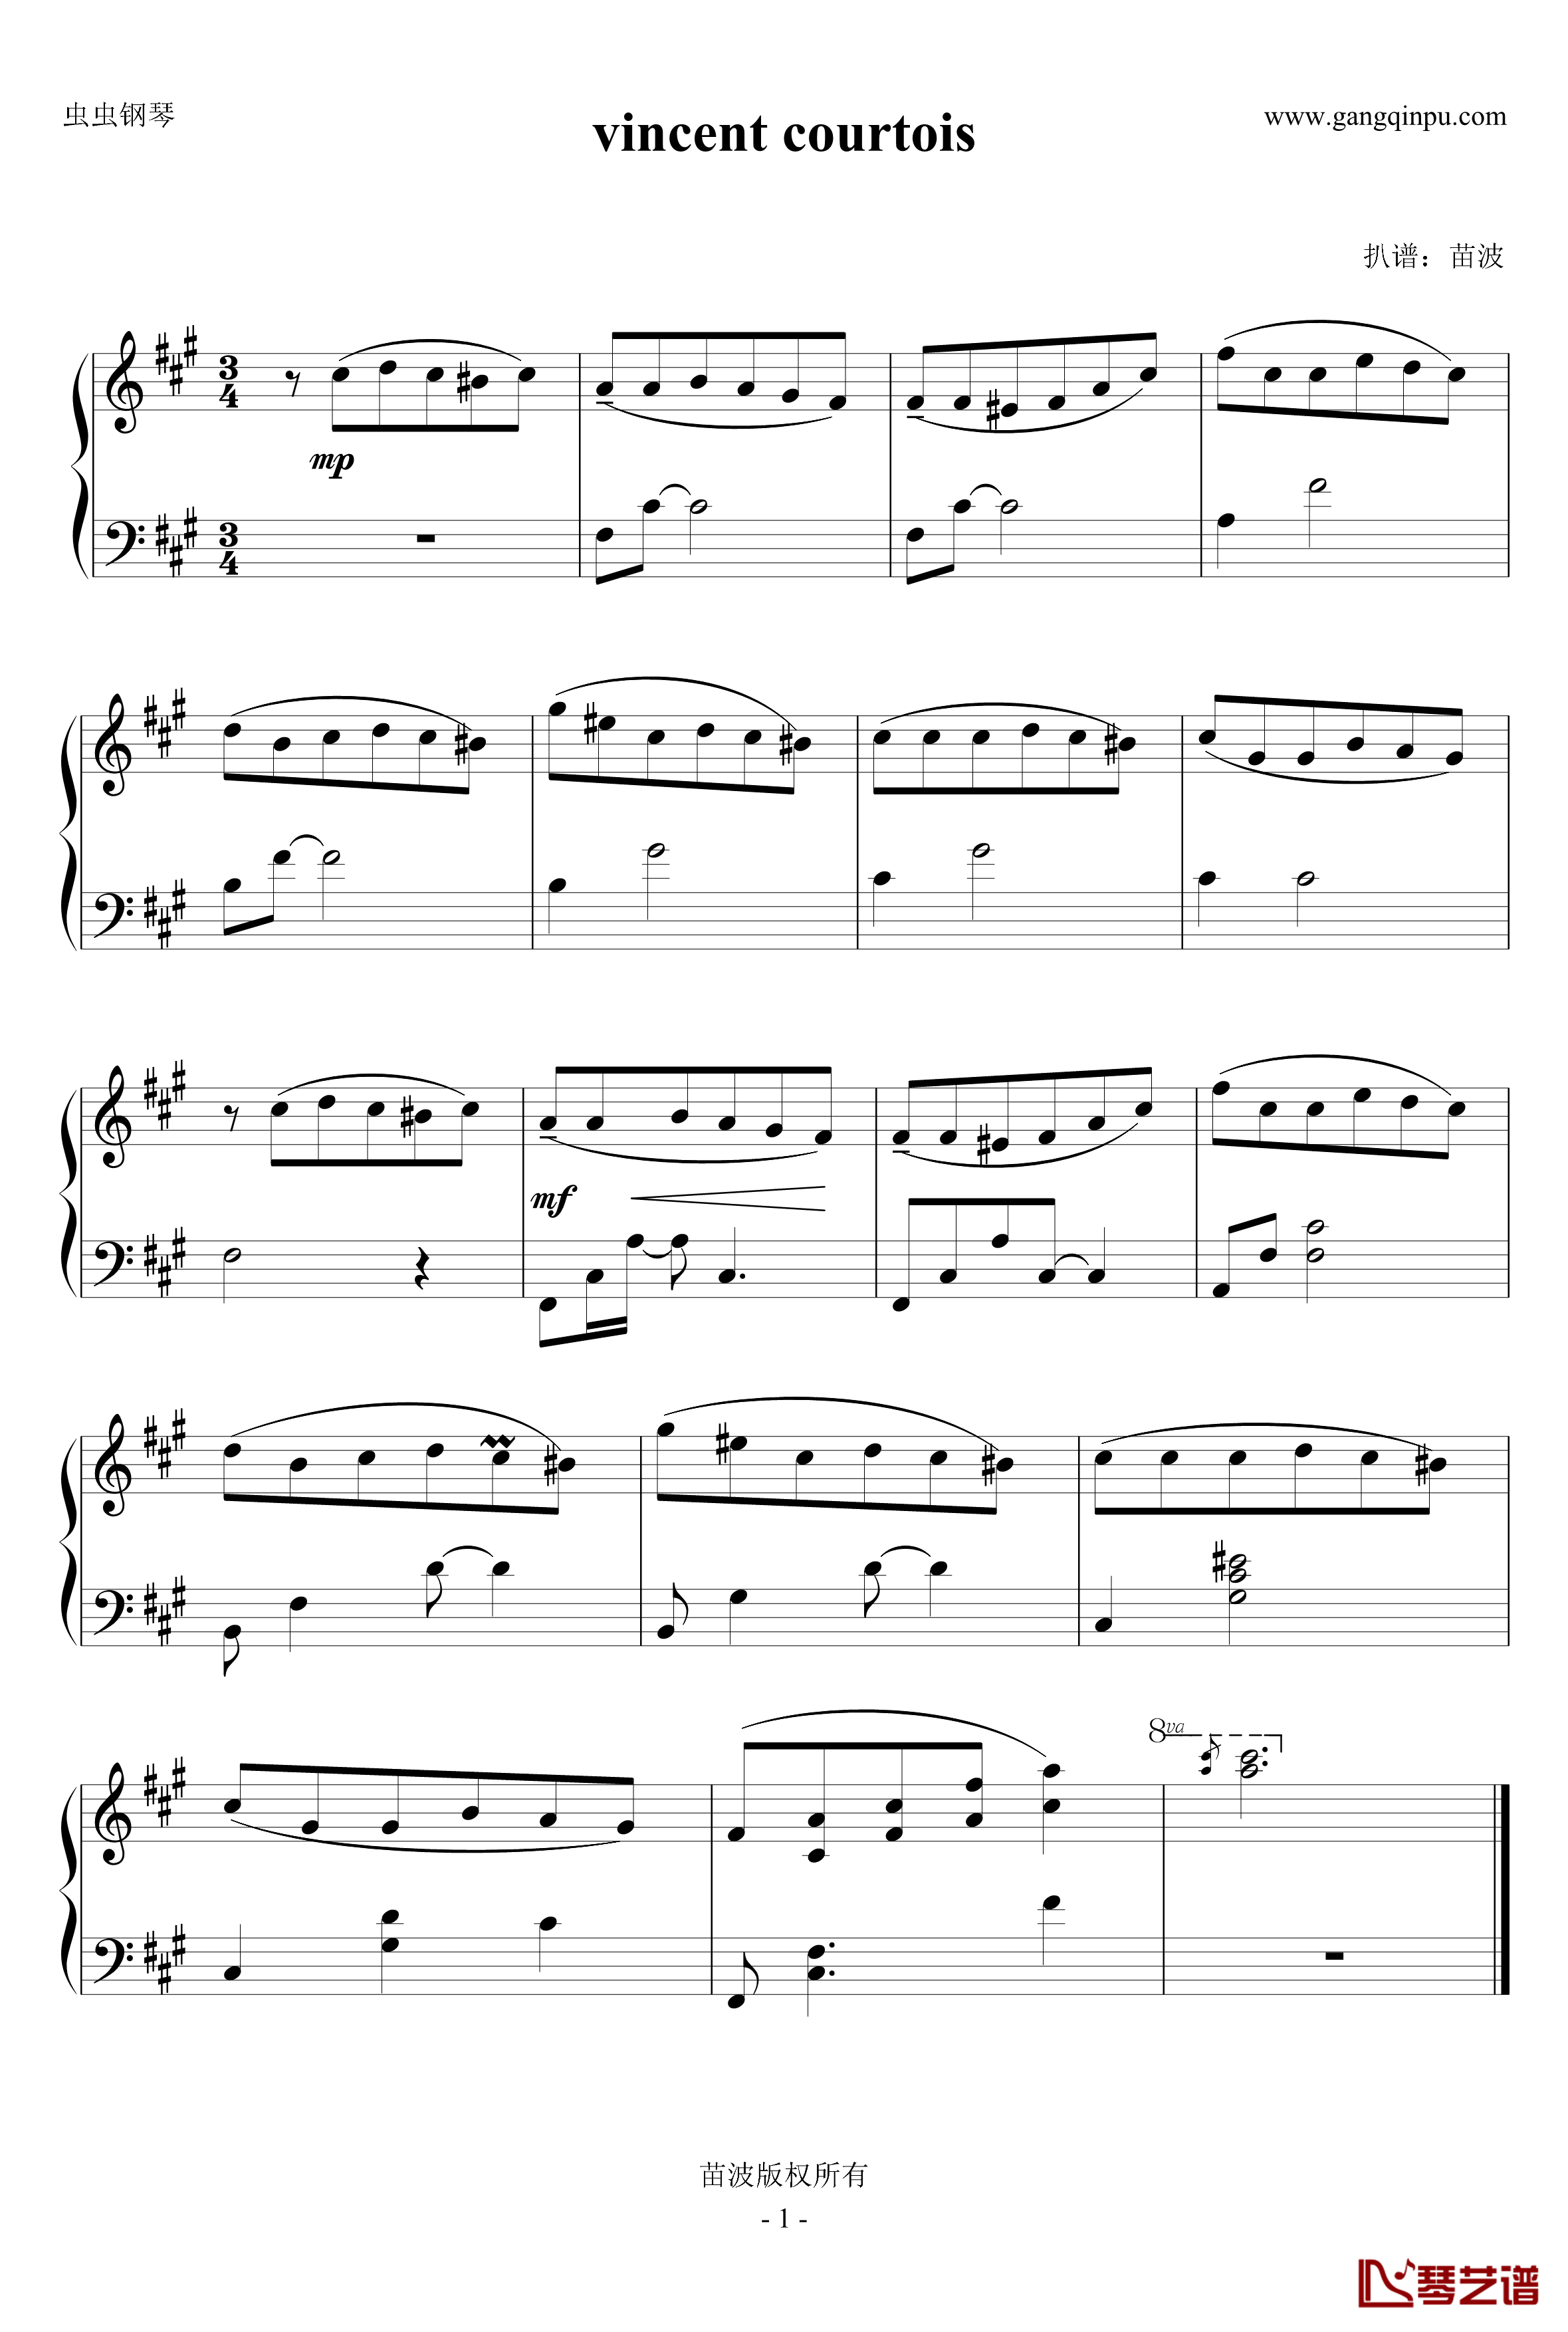 vincent courtois钢琴谱1